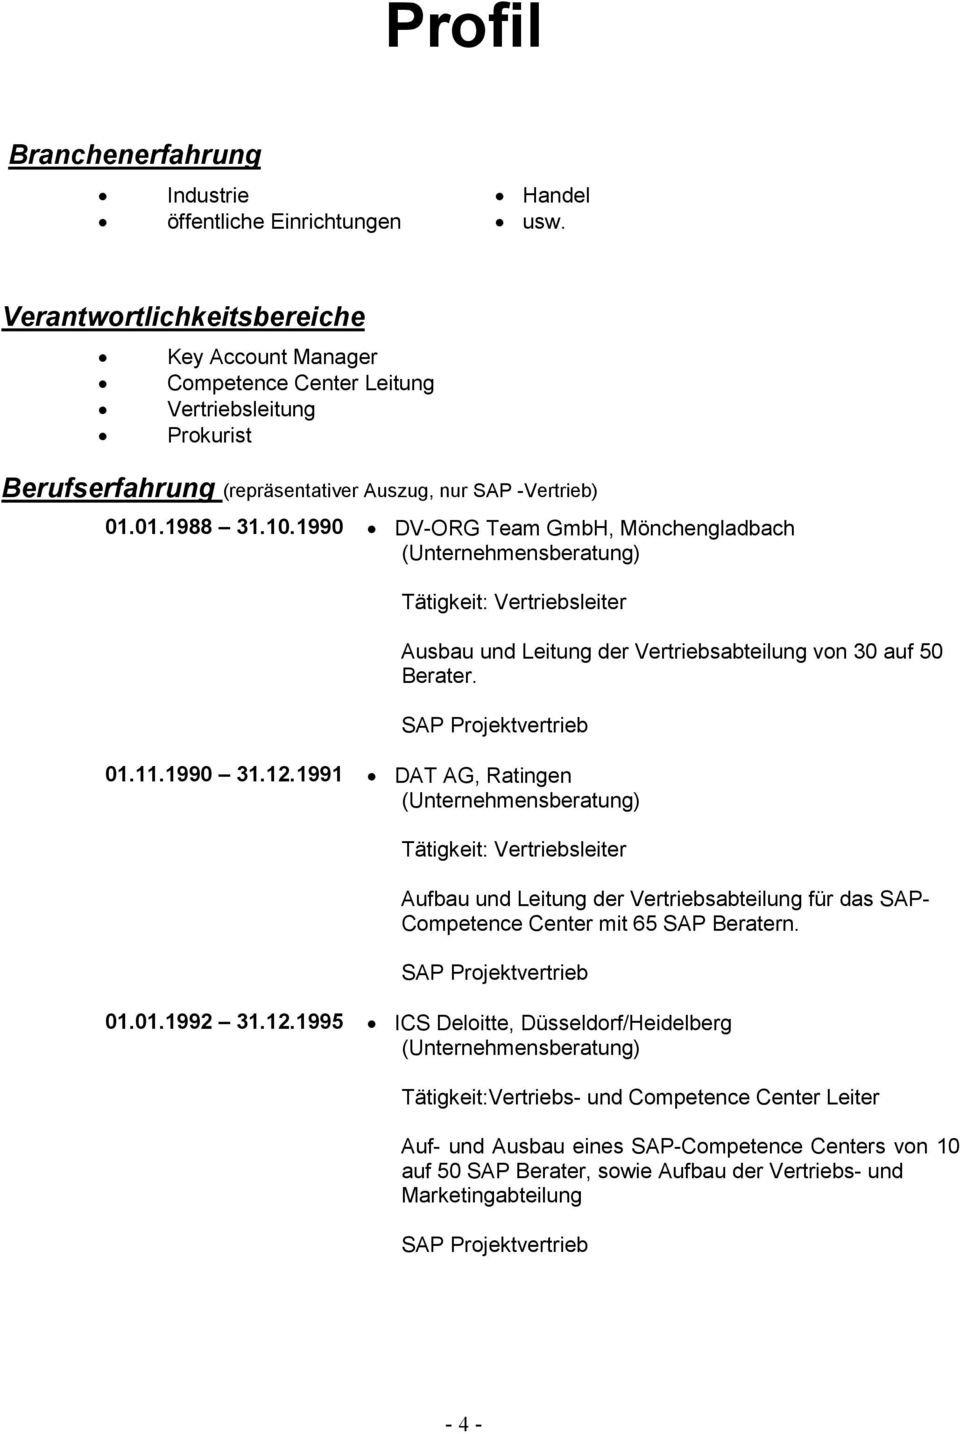 1990 DV-ORG Team GmbH, Mönchengladbach Tätigkeit: Vertriebsleiter Ausbau und Leitung der Vertriebsabteilung von 30 auf 50 Berater. 01.11.1990 31.12.